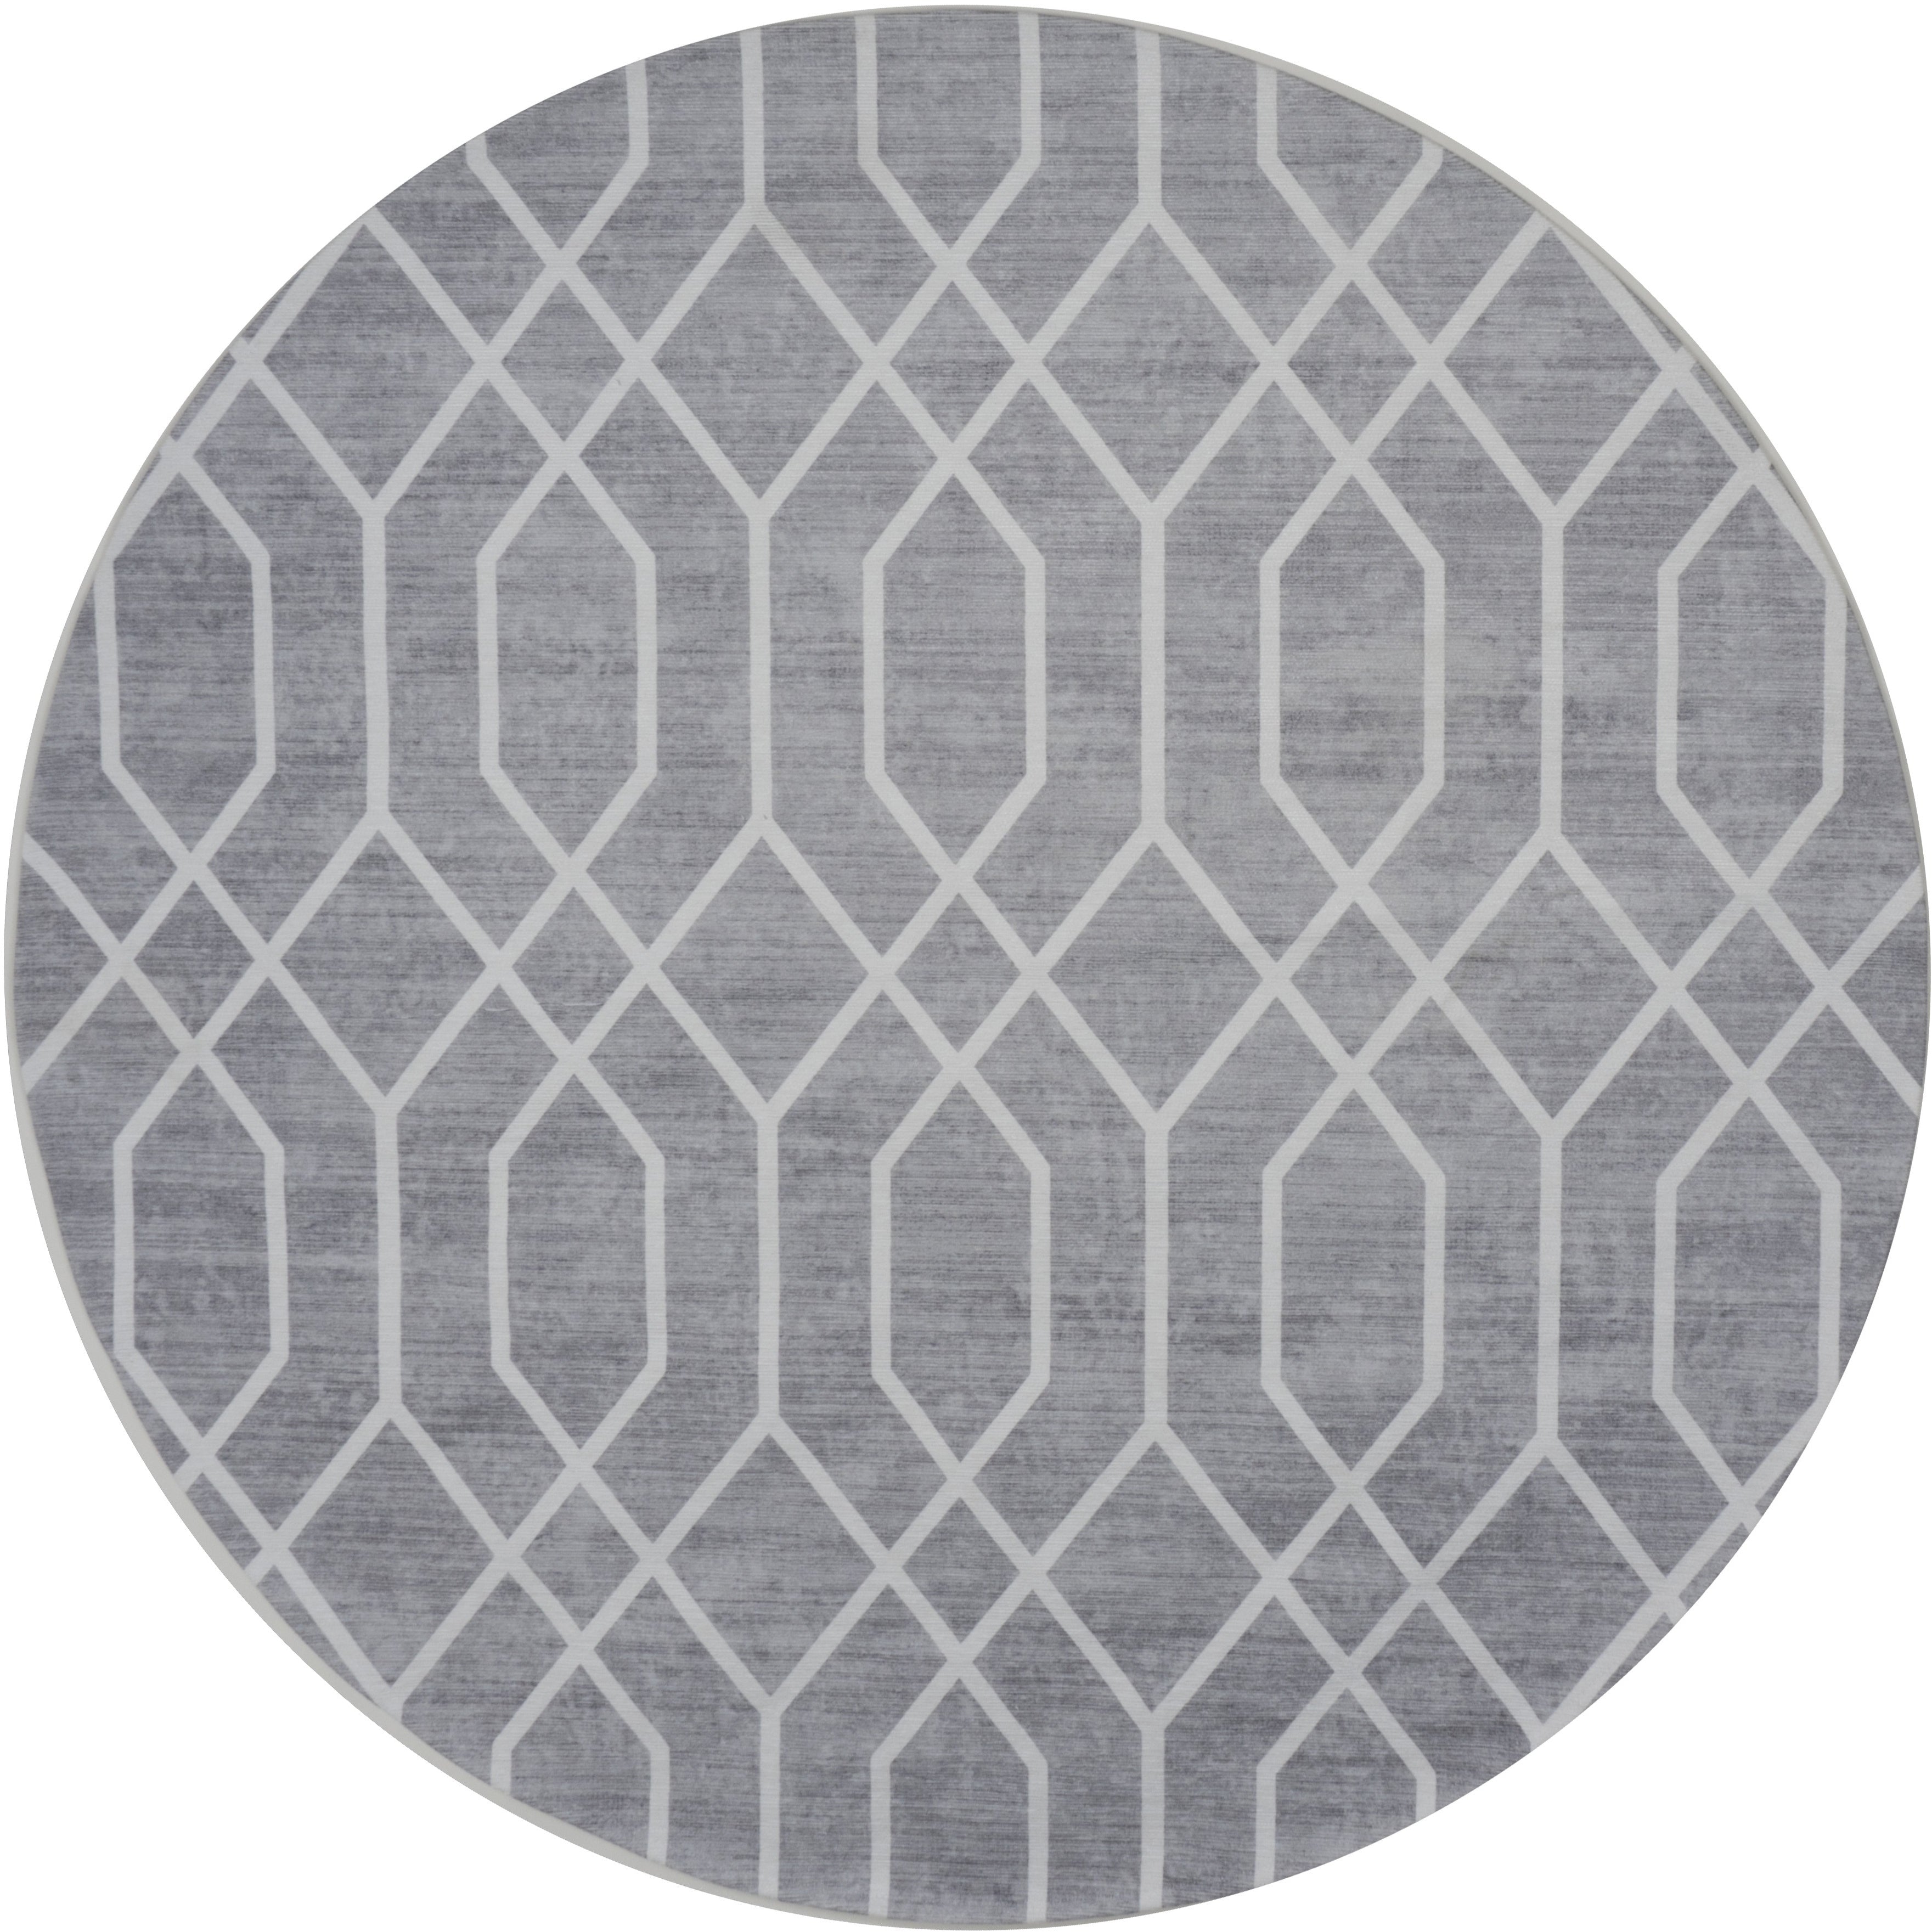 Rug Pattern Gray Round Round